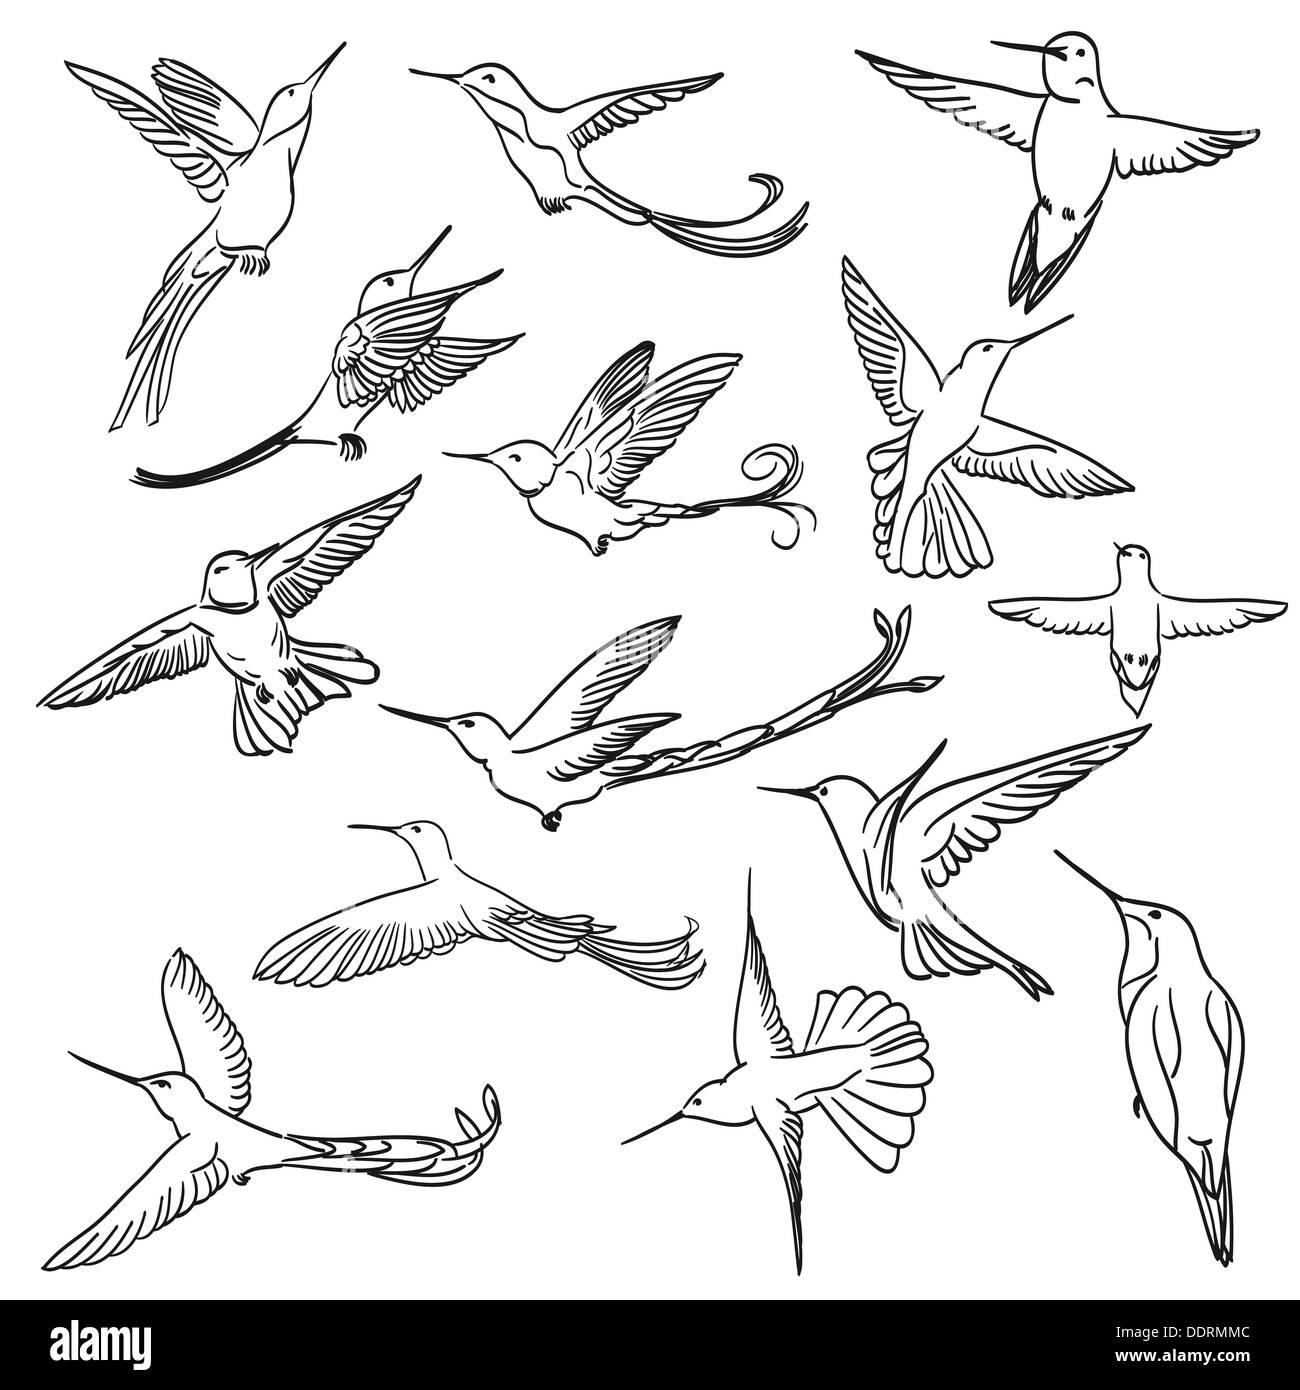 Jeux de dessin colibri faite dans le cadre de style art Banque D'Images